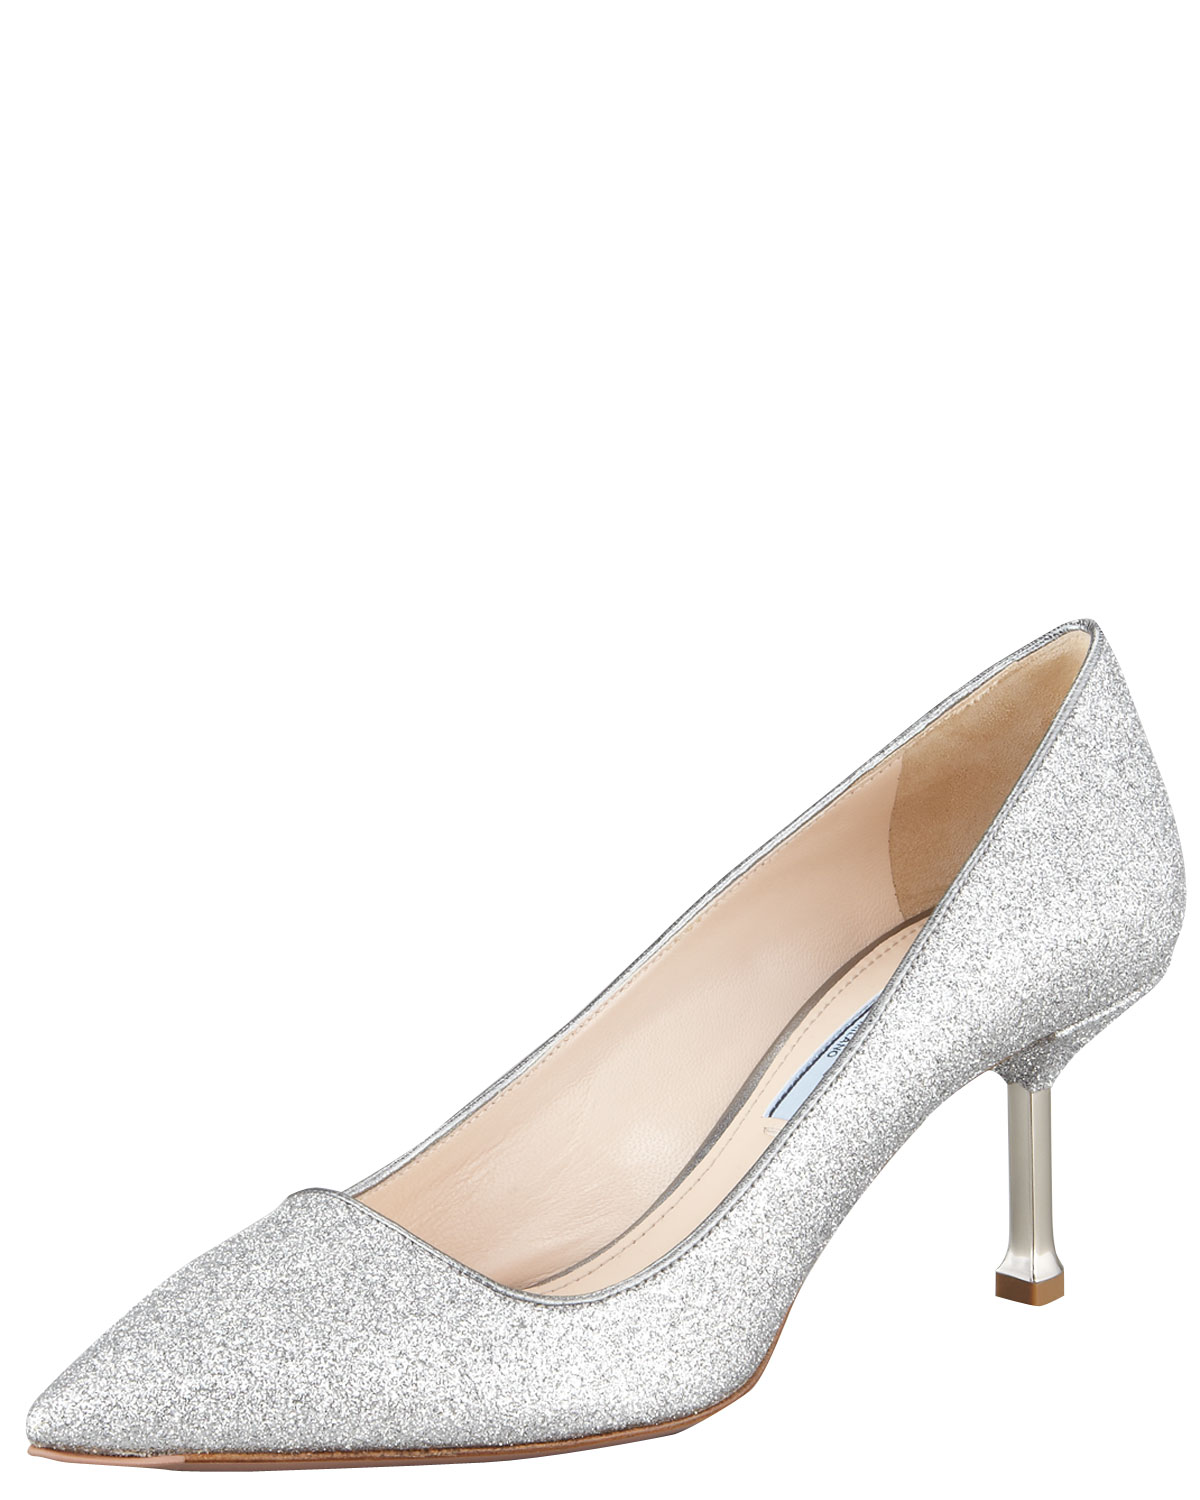 prada sparkly shoes